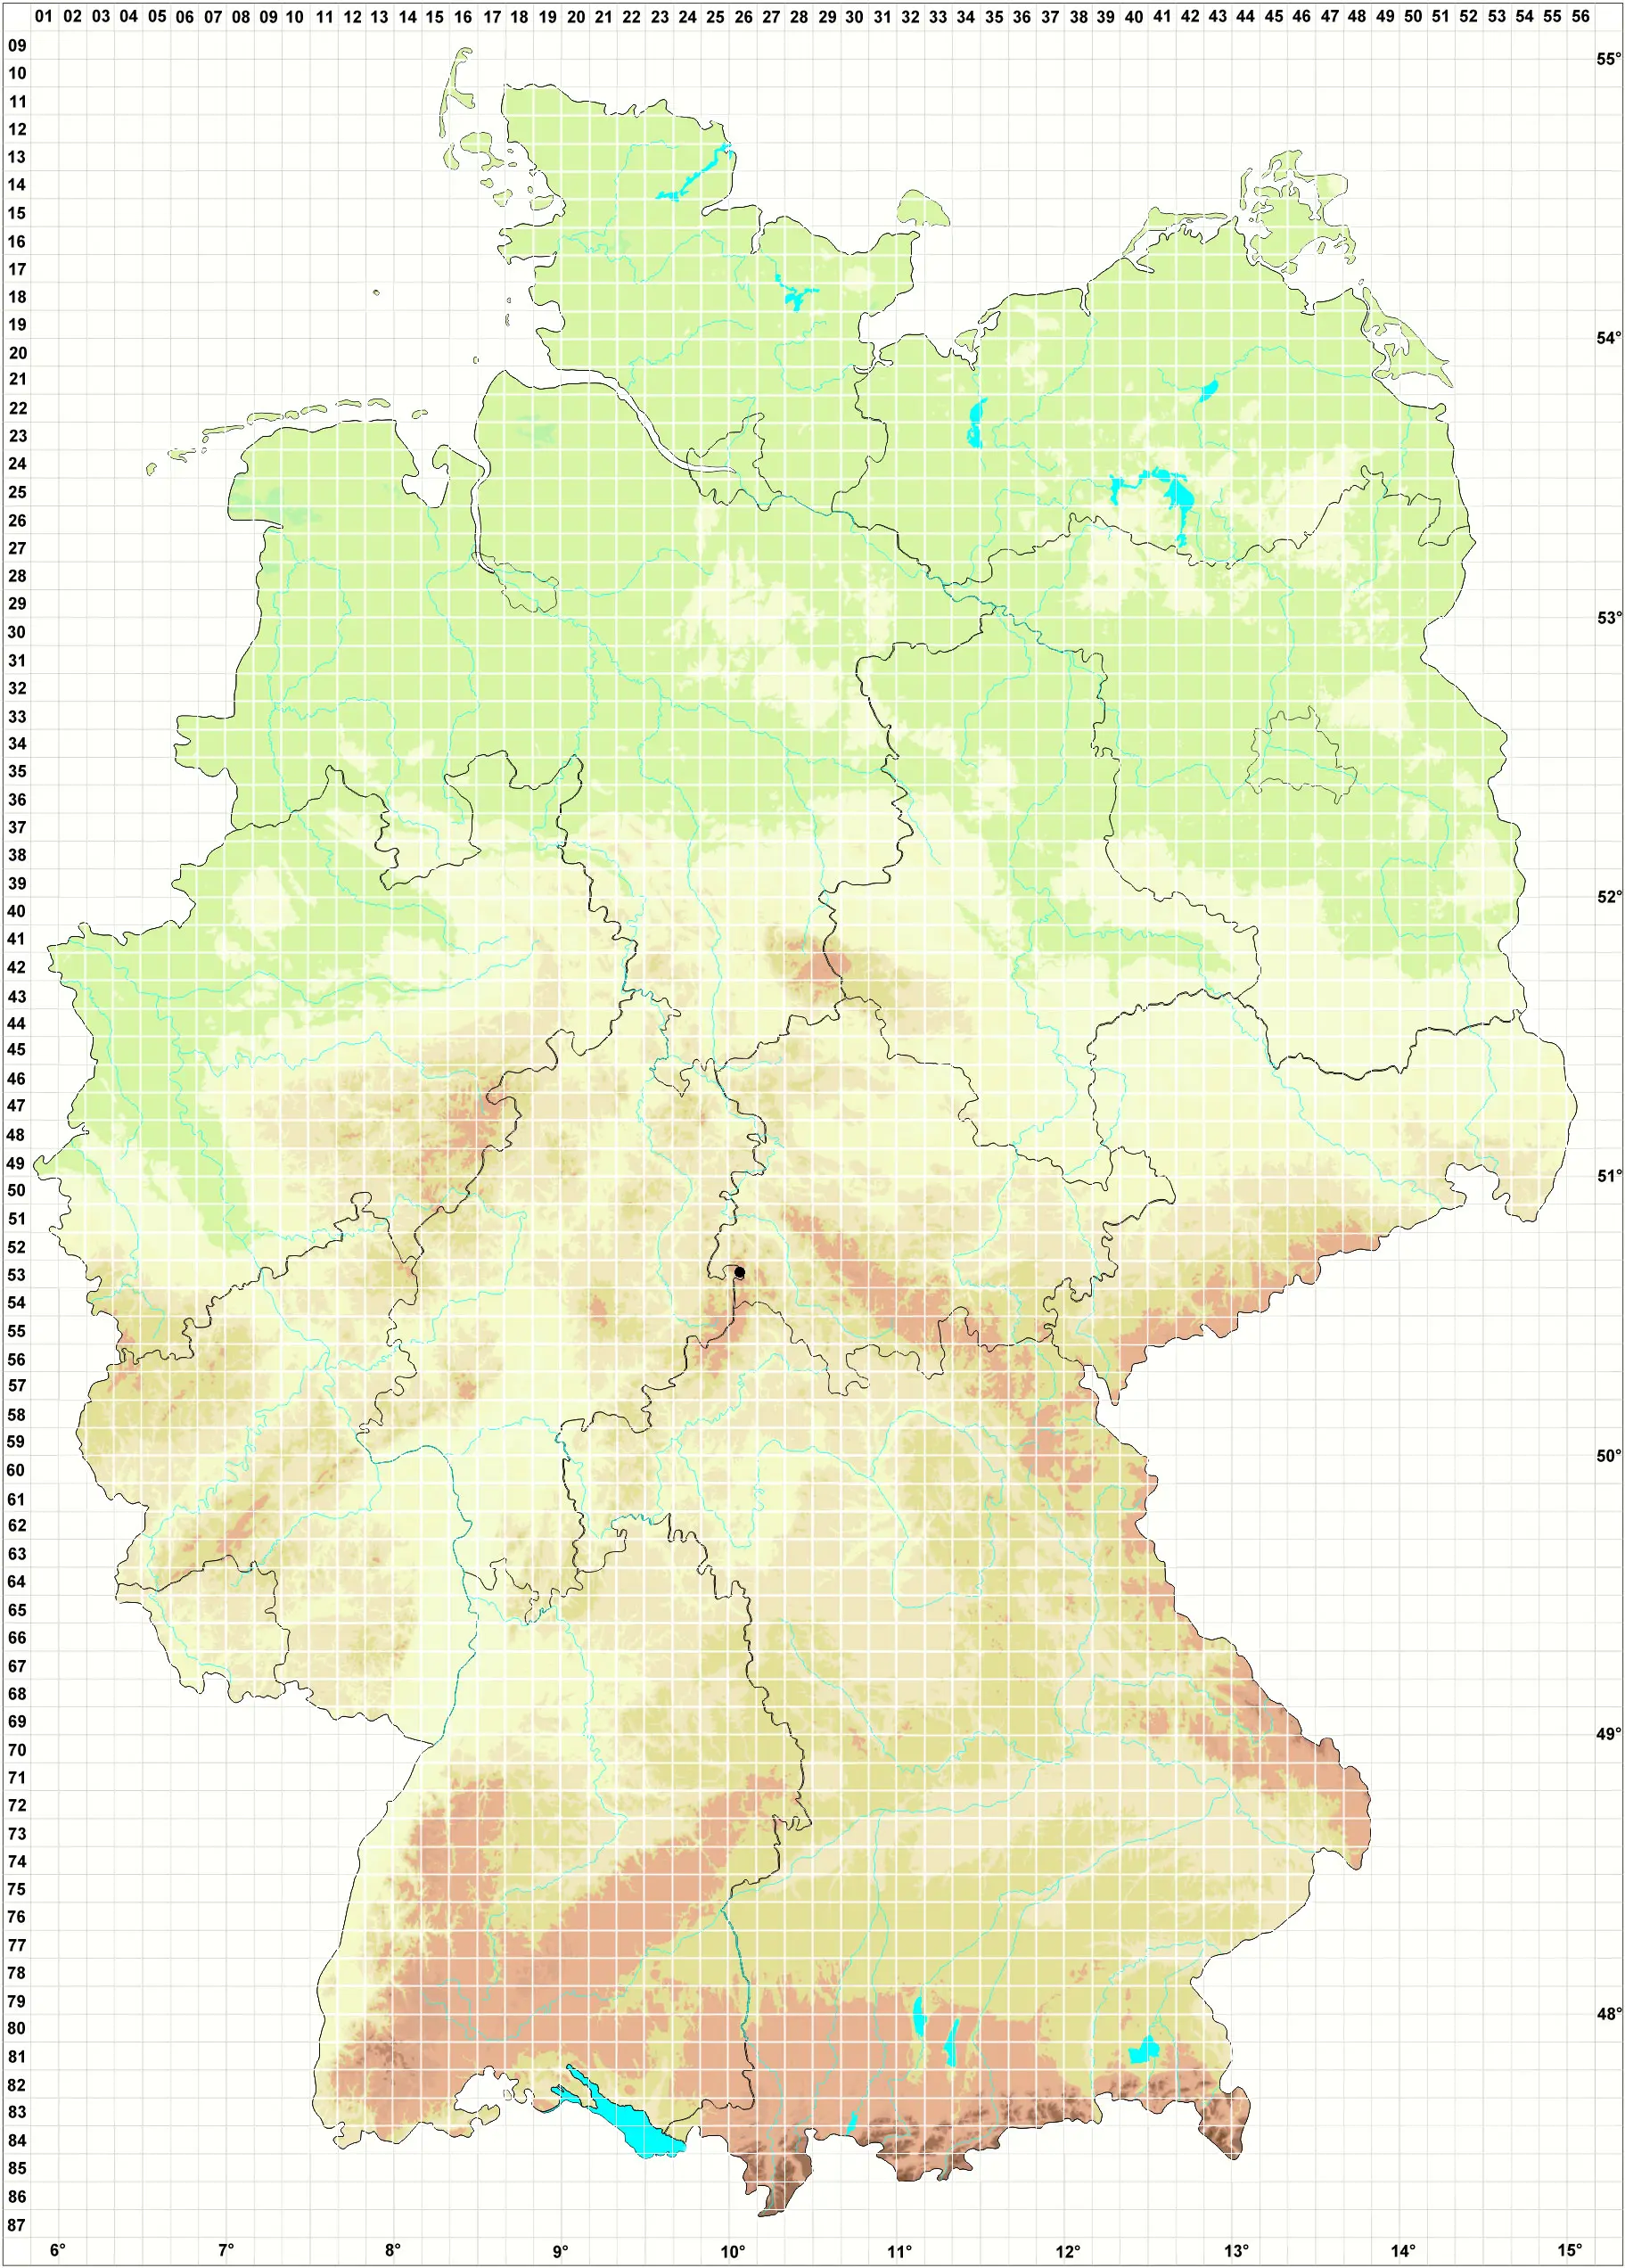 Karte H. Grünberg, L. Meinunger, W.Schröder 07.10.2008